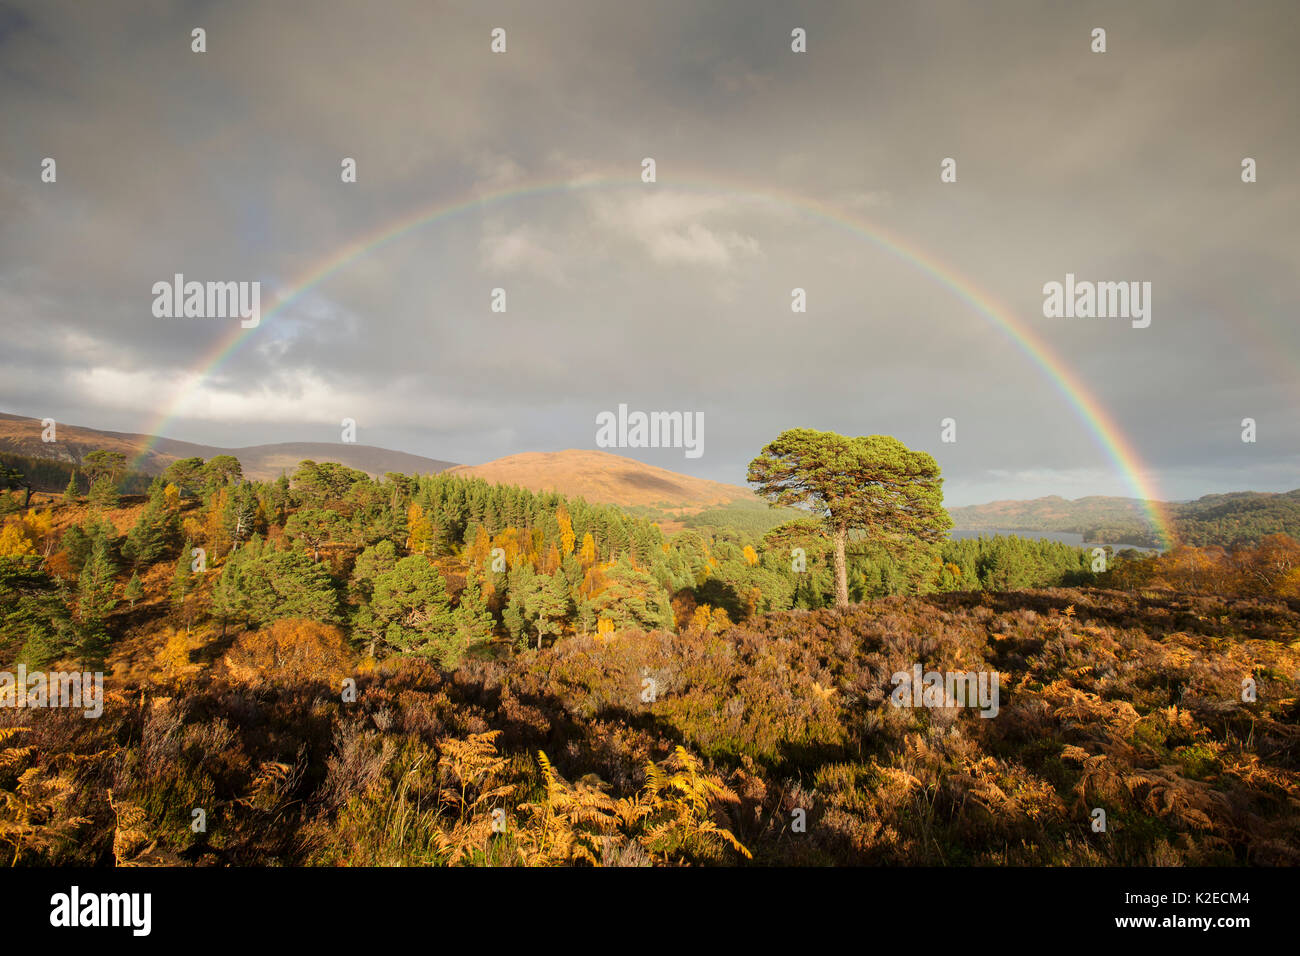 Regenbogen über Gemeine Kiefer (Pinus sylvestris) Bäume, Glen Affric, Highlands, Schottland, Großbritannien, Oktober 2015. Stockfoto